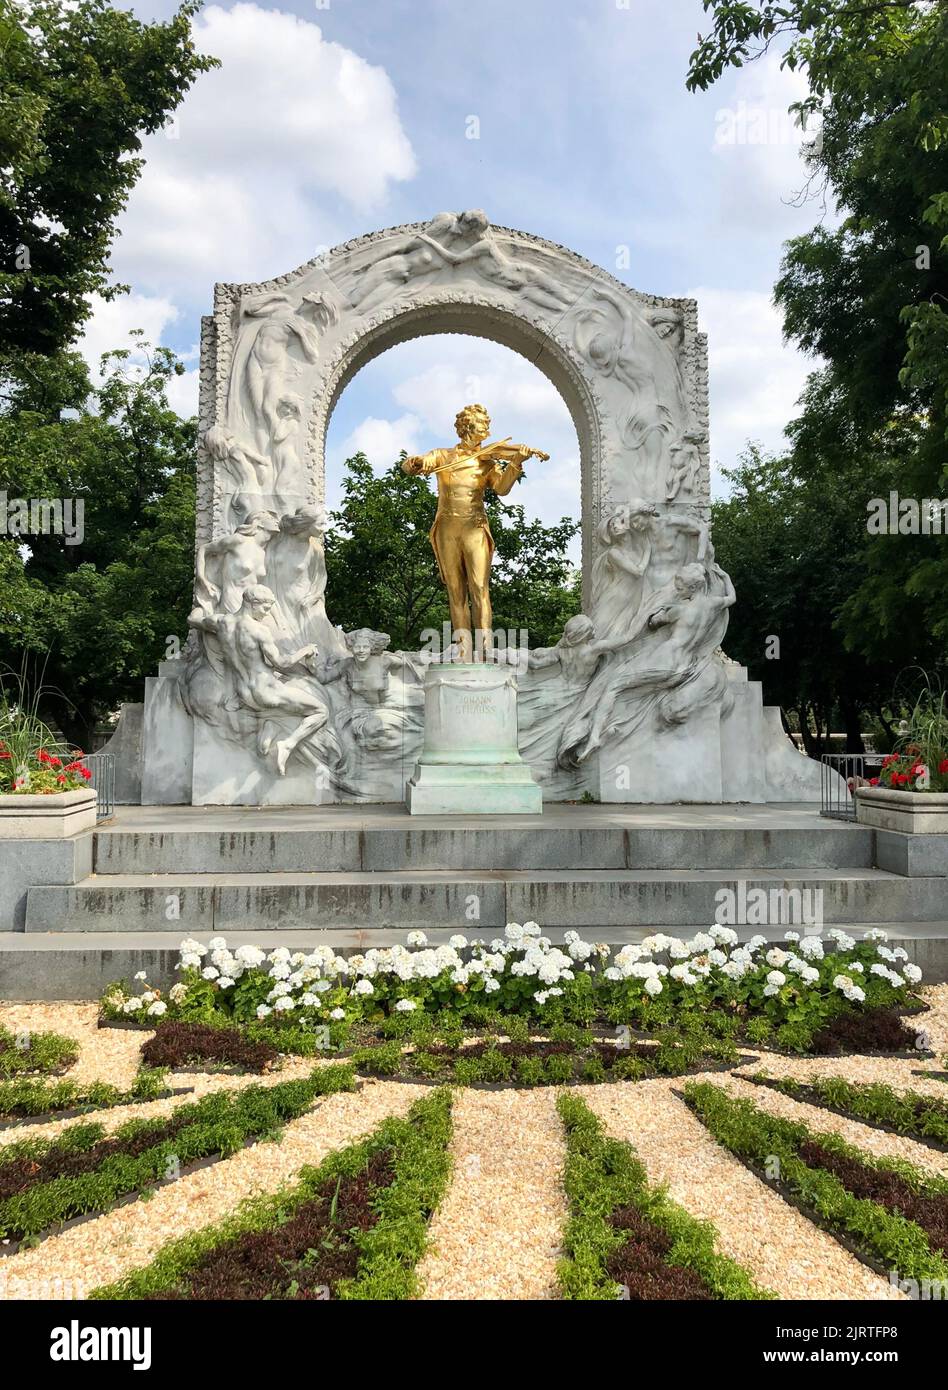 Goldene Statue von Johann Strauss im Stadtpark. Berühmte Sehenswürdigkeiten (Touristenattraktion) in Wien, Österreich Stockfoto